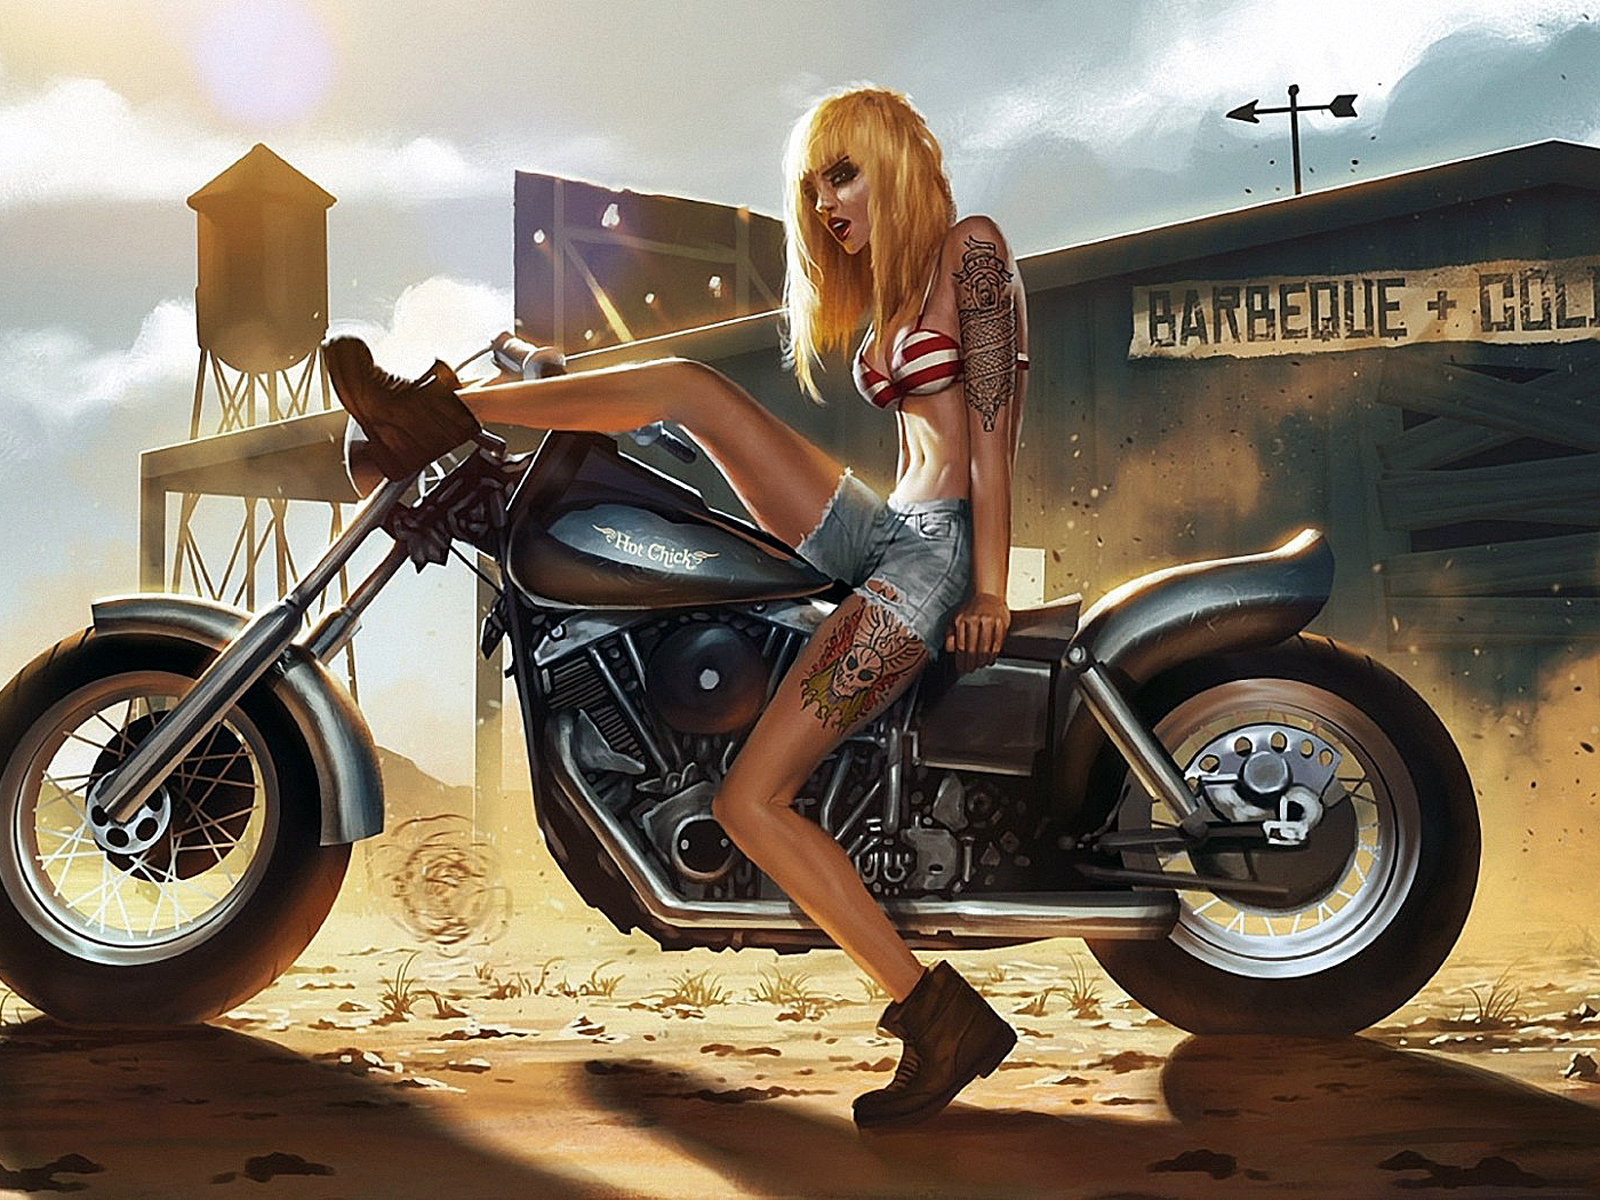 Bad bad blondes. Девушка на байке арт. Девушка на мотоцикле. Байкер арт. Девушка байкерша арт.